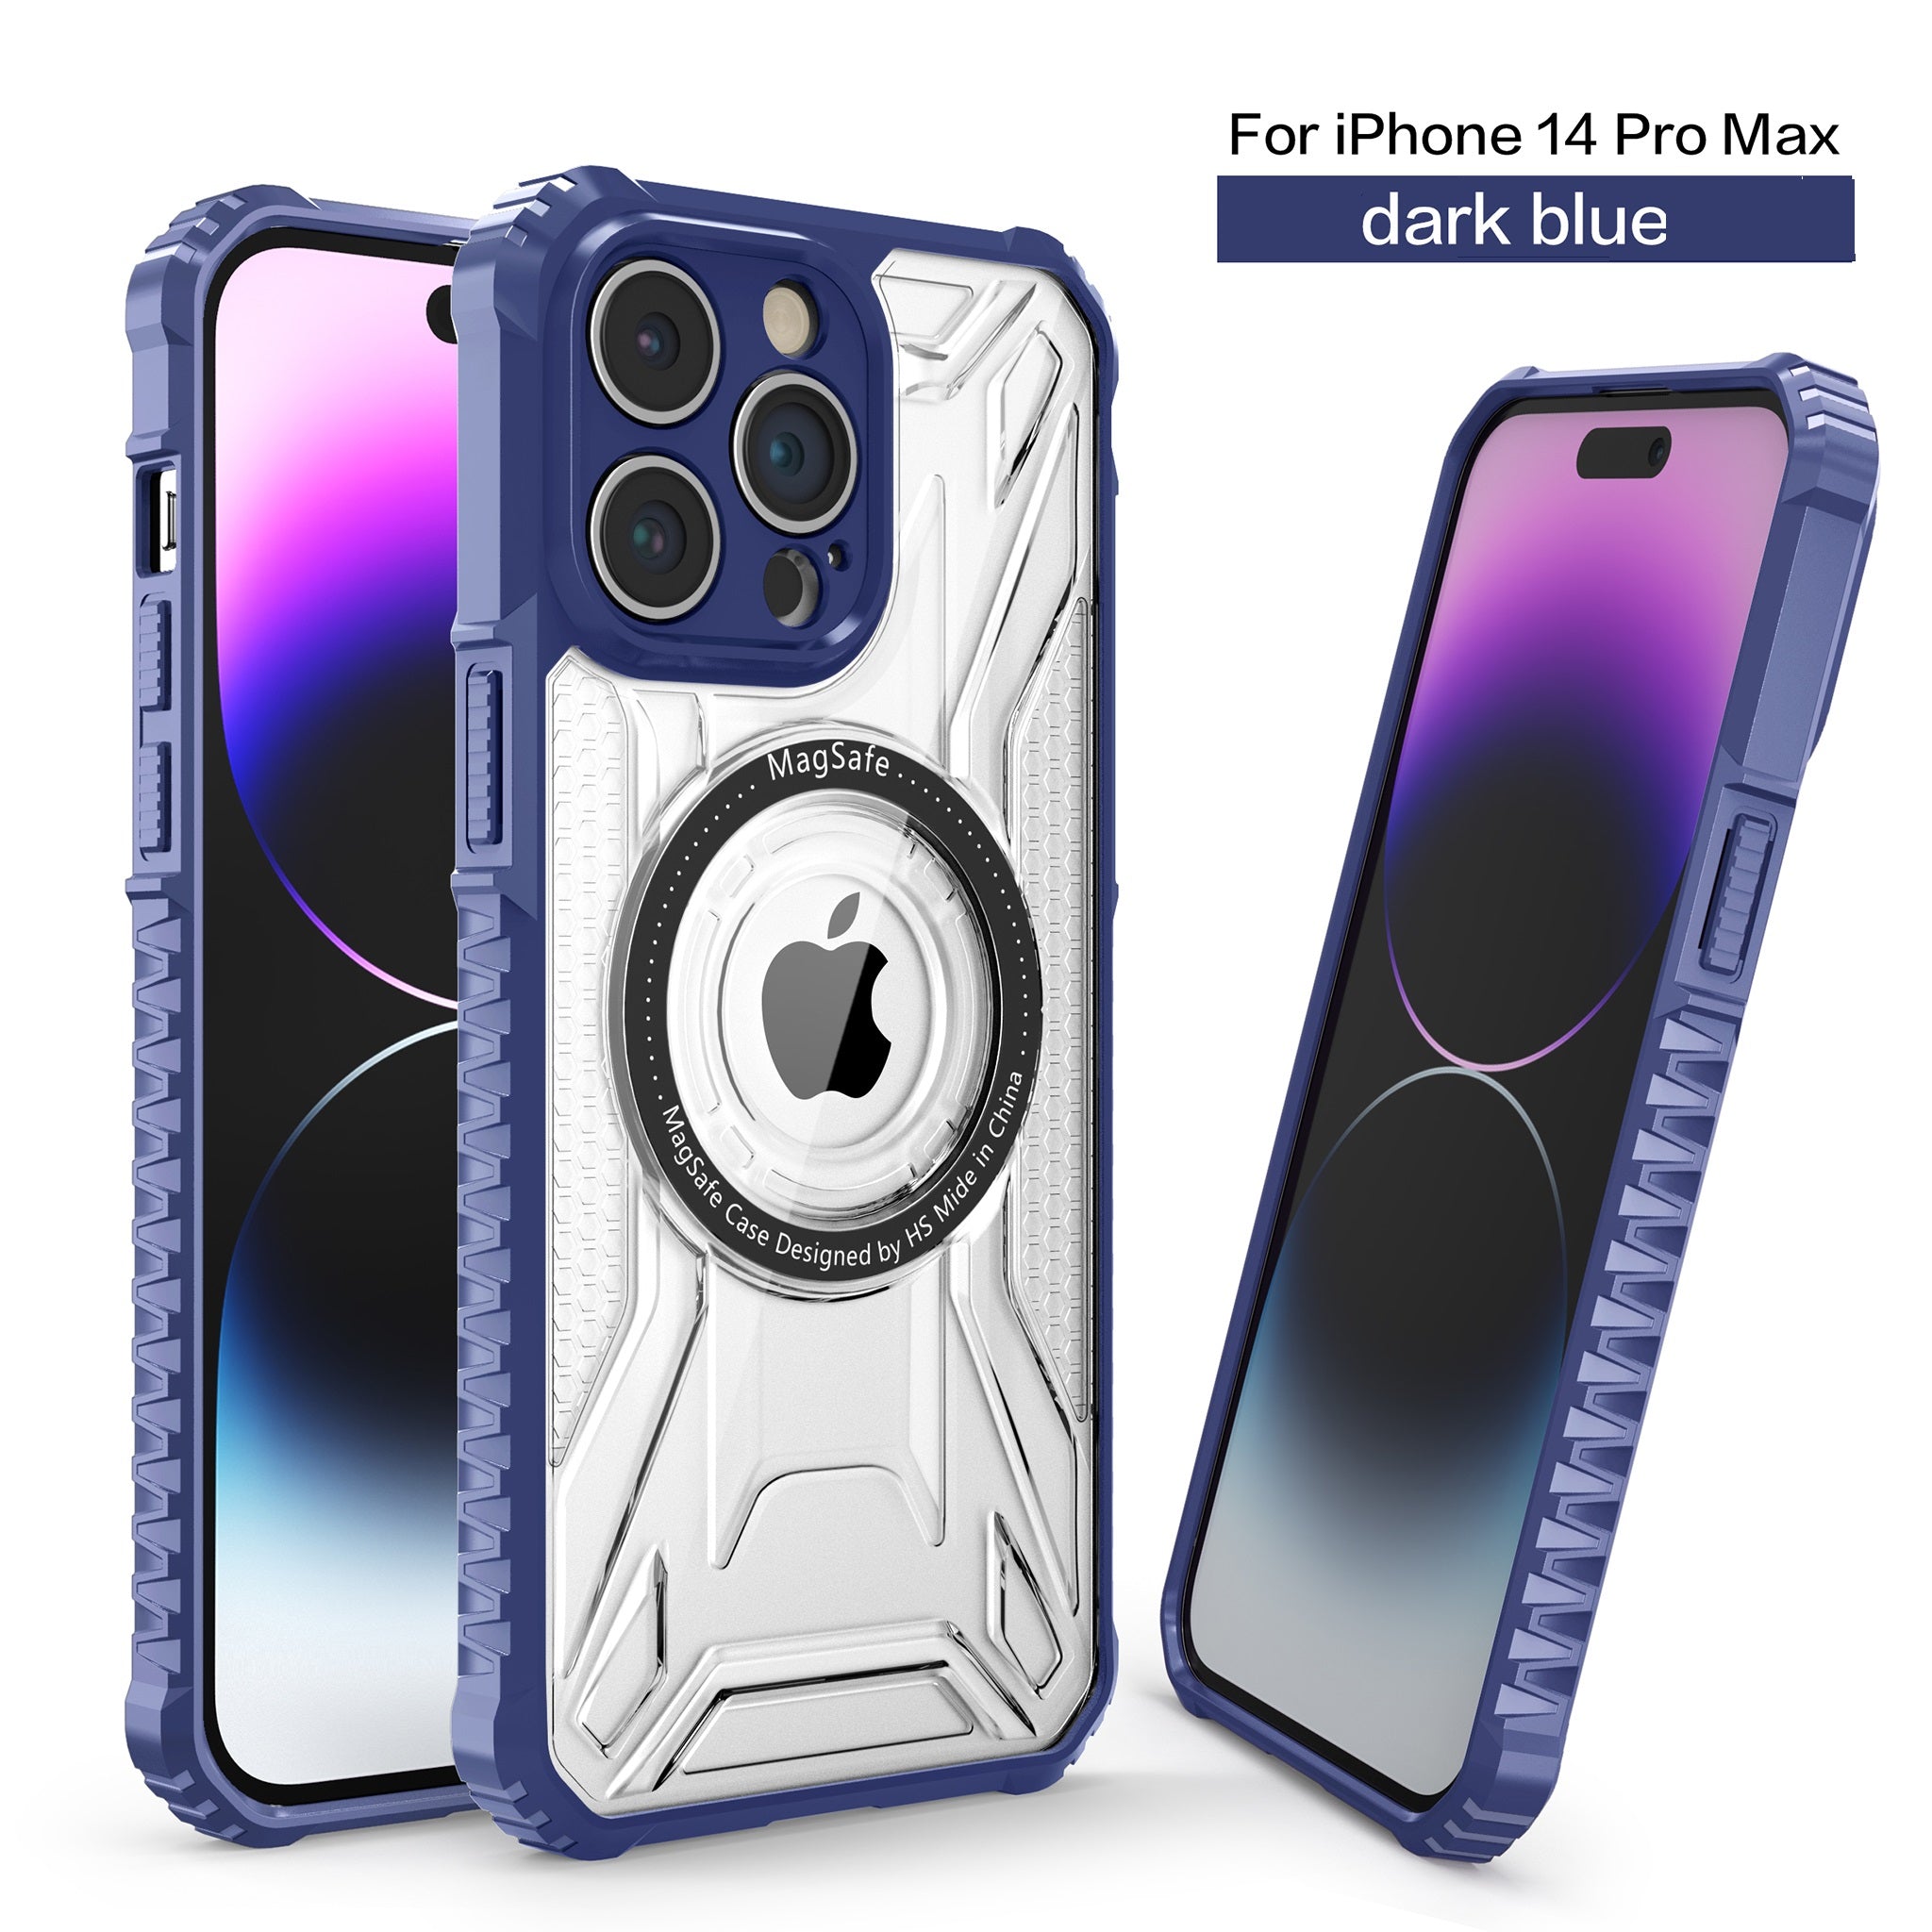 MC9 Design Case for iPhone 14 Pro Max